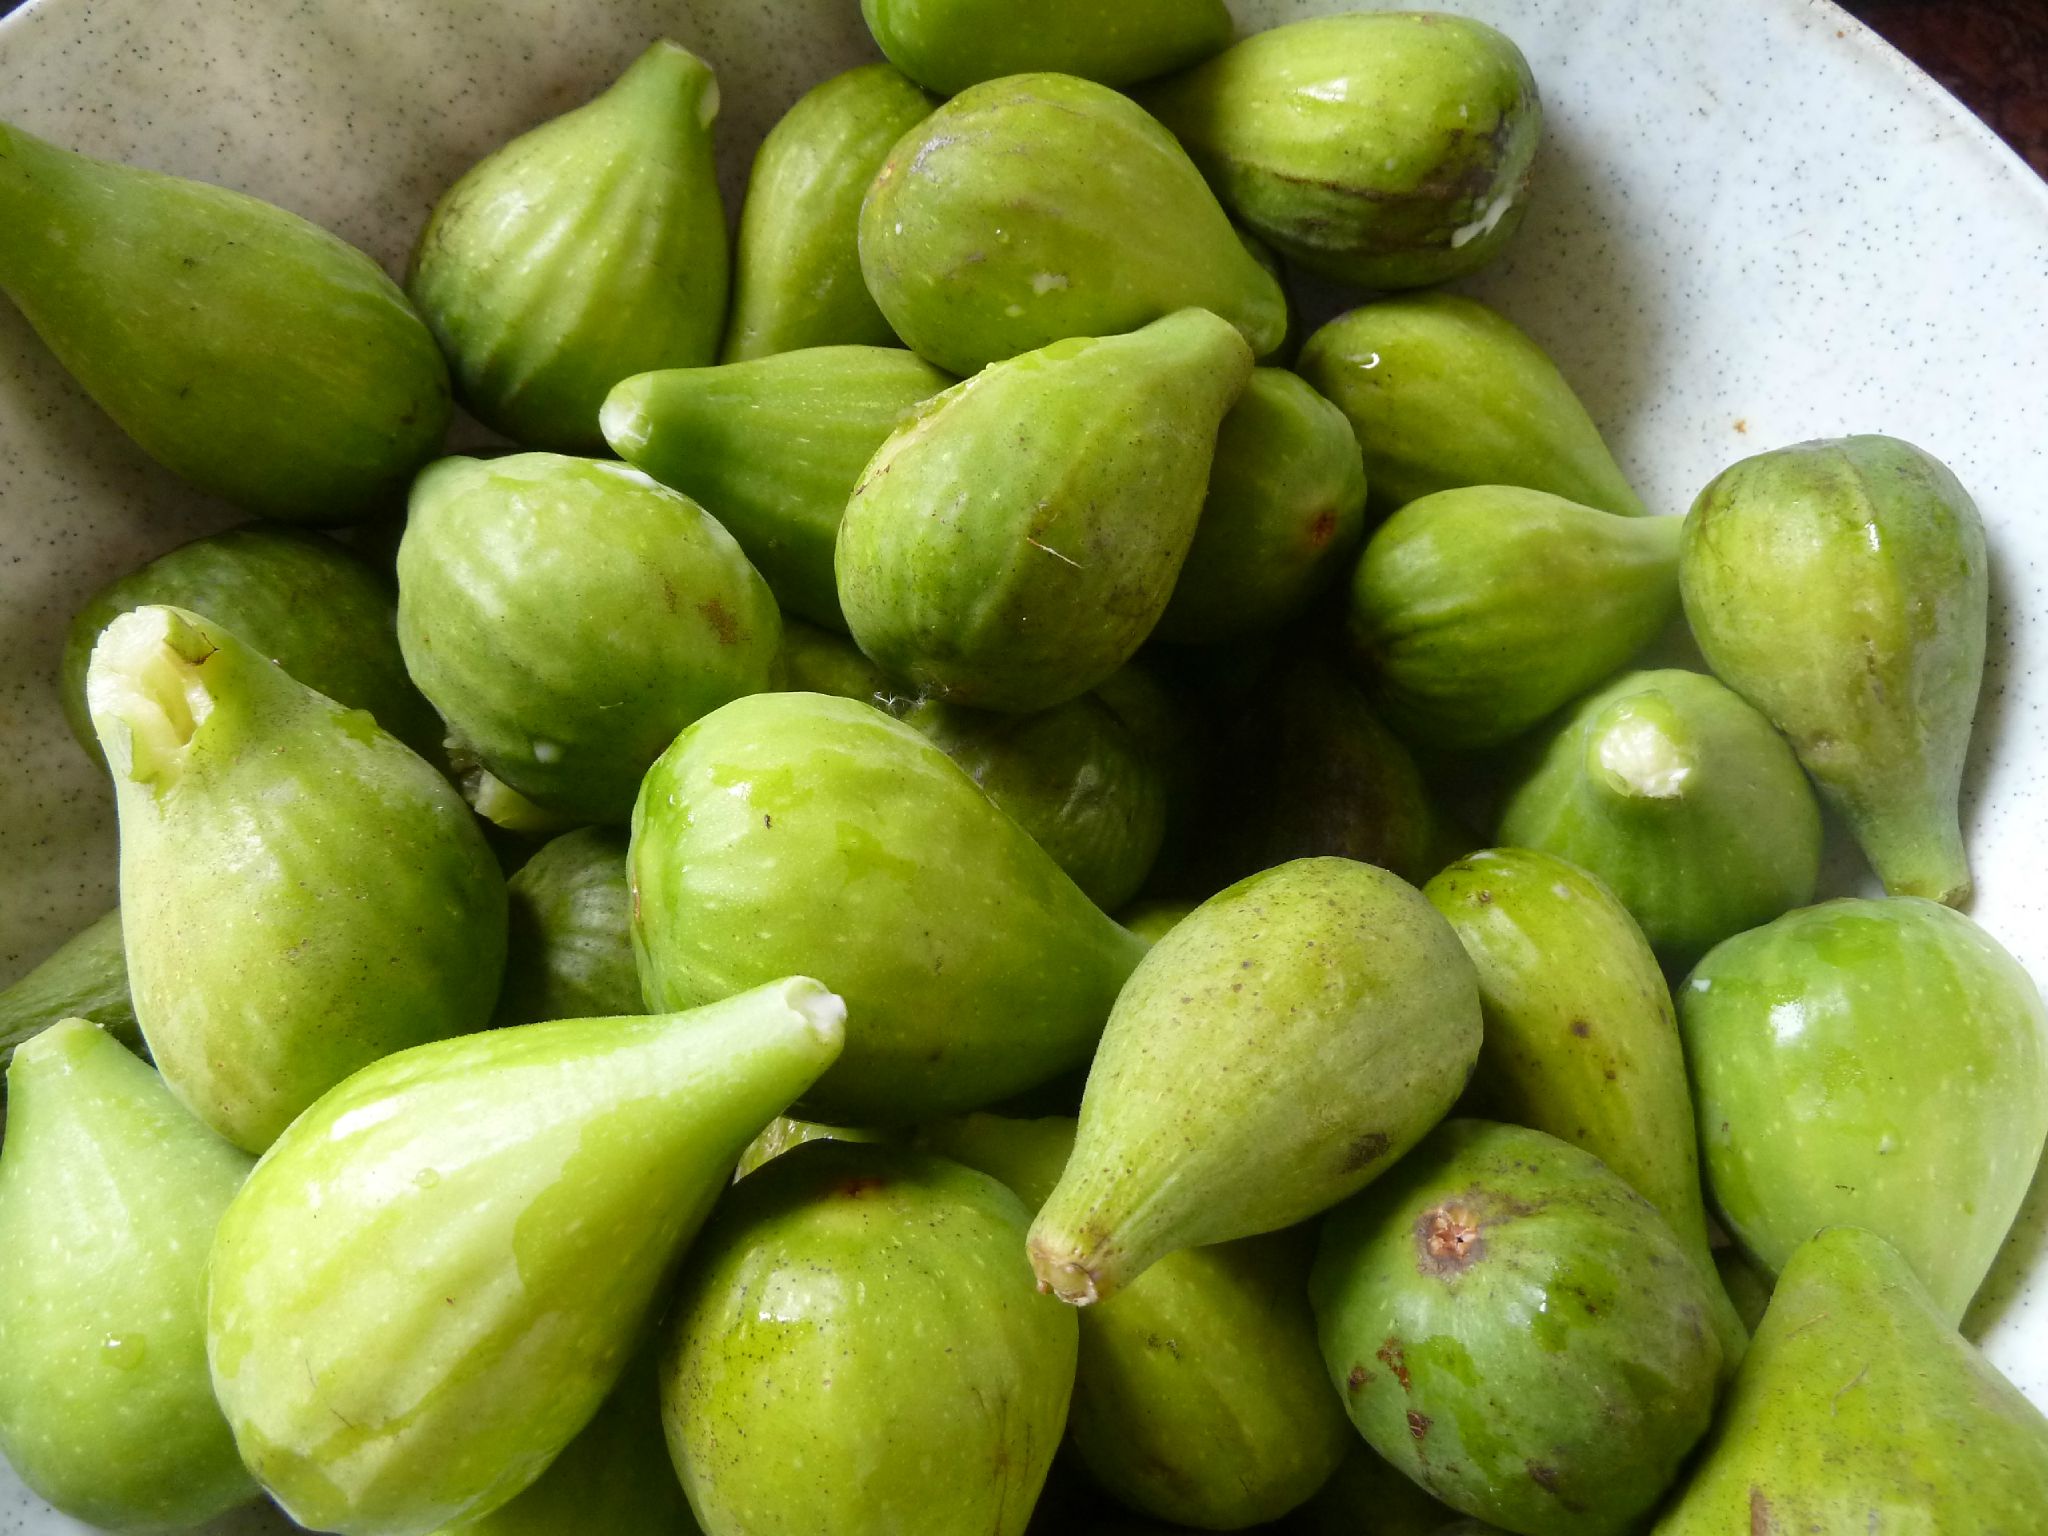 Les figues - Petite histoire de la figue et variétés et cuisine